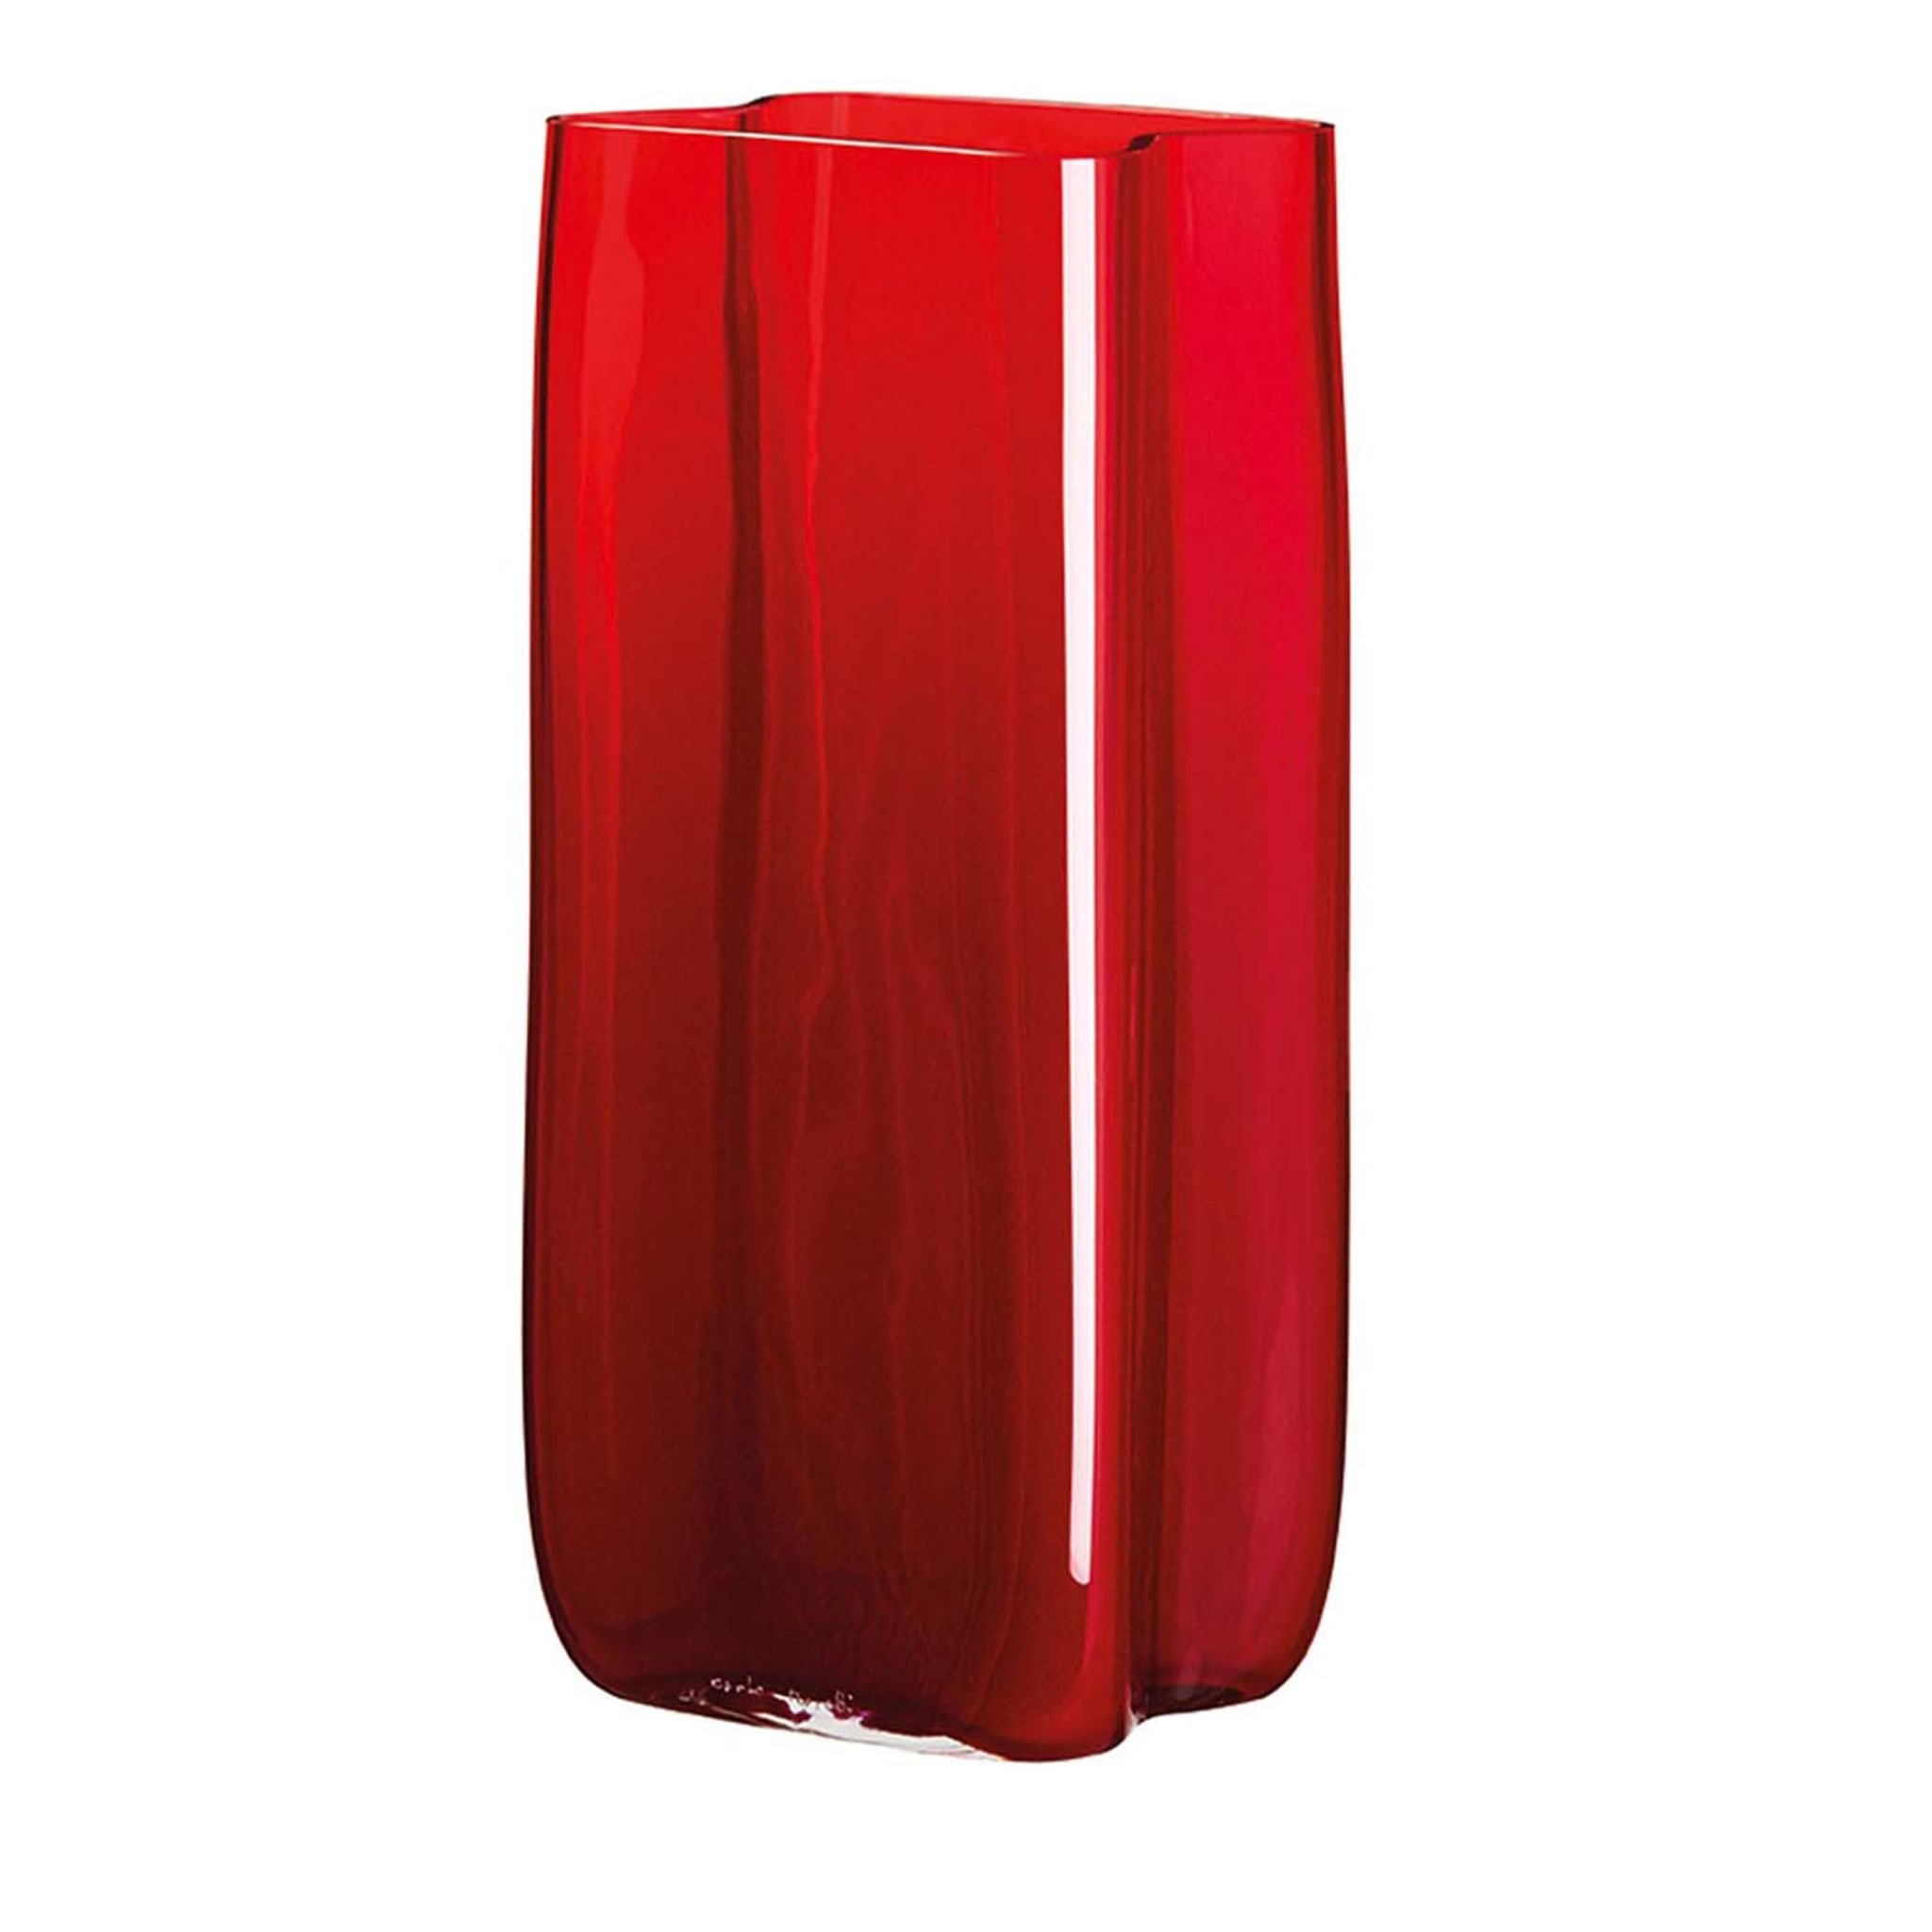 Bosco Große rote Vase mit Voluten von Carlo Moretti - Hauptansicht